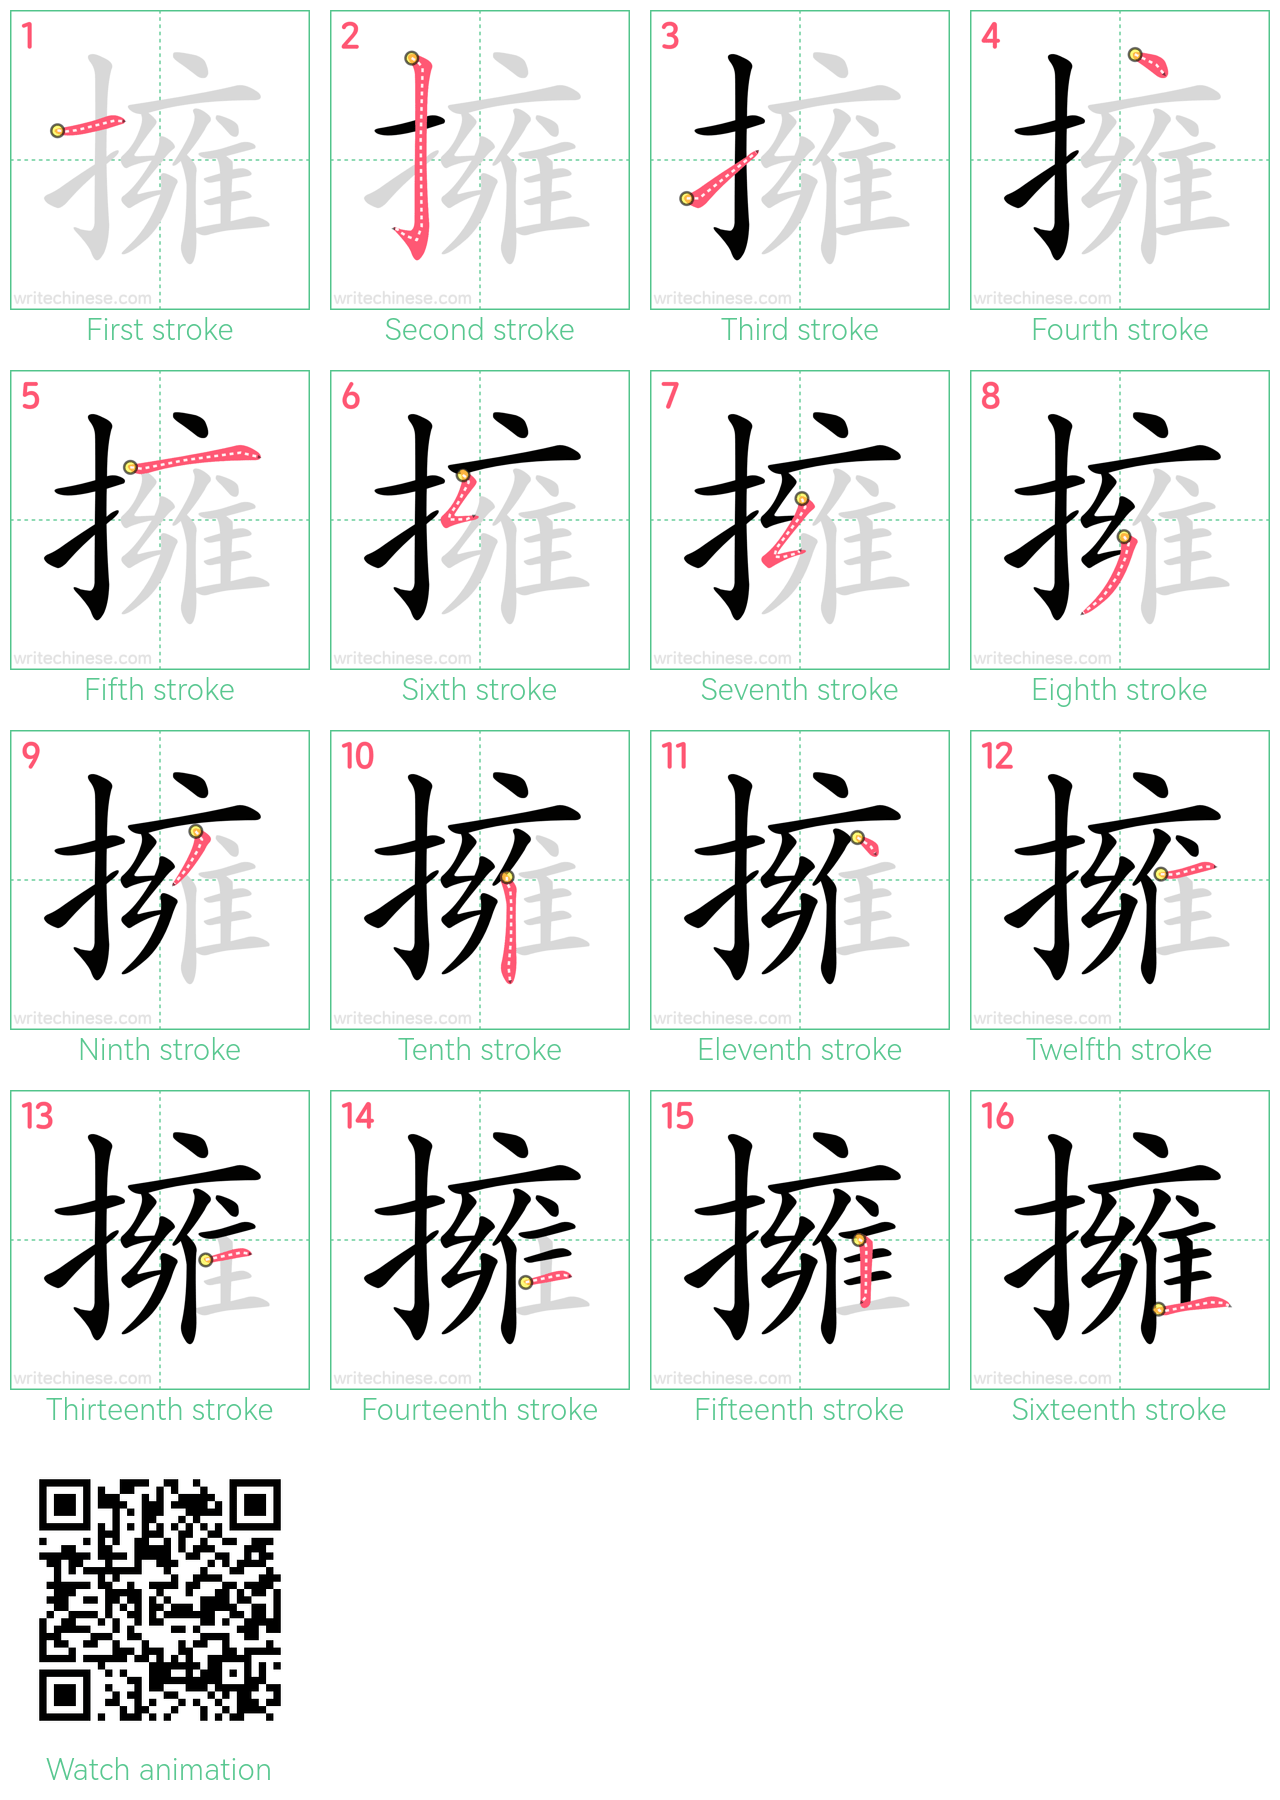 擁 step-by-step stroke order diagrams